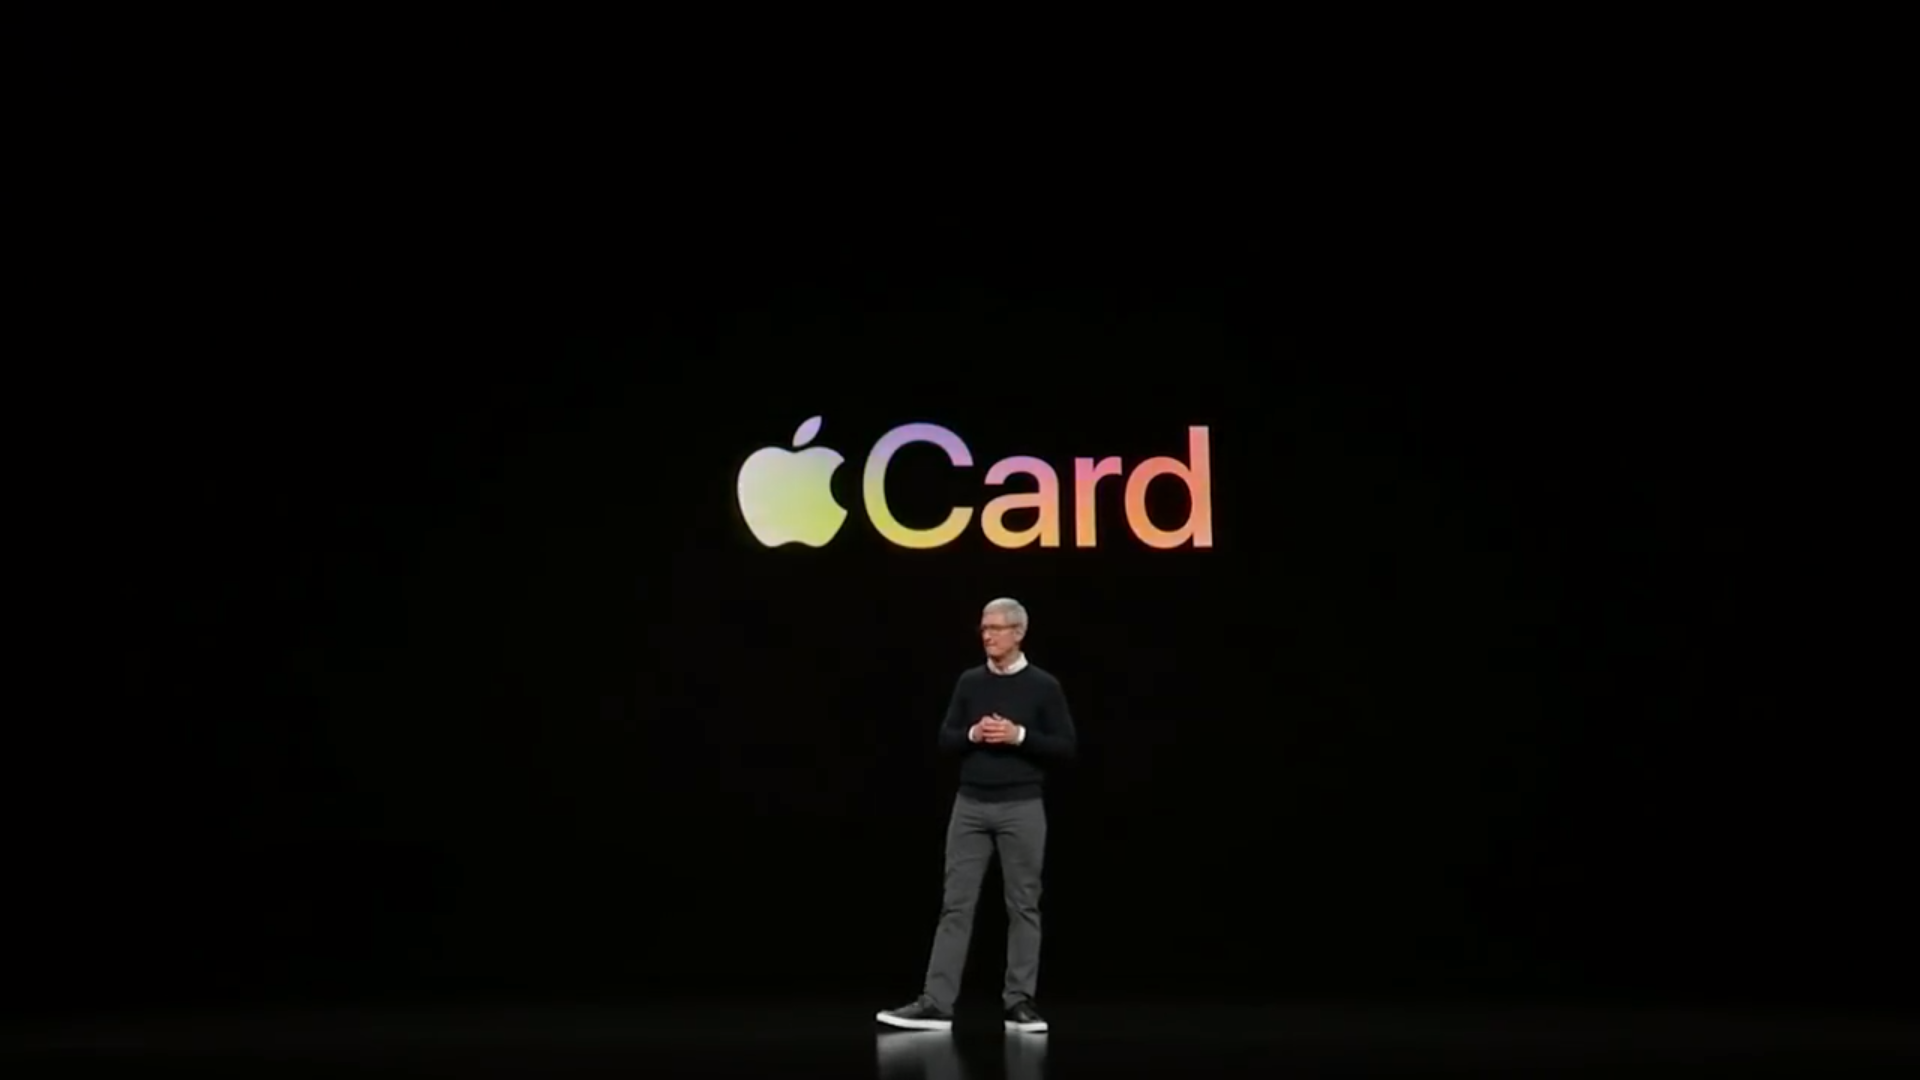 Apple će se, dakle, okušati u kartičnom poslovanju. Za razliku od klasičnih banaka i kartičnih firmi, prijava za Appleovu kreditnu karticu će biti moguća direktno s iPhonea i iPada. Ovu funkciju imaju virtualne banke poput, recimo, Revoluta. Kada se završi postupak i kartica je odobrena, bit će direktno pohranjena unutar Apple Wallet aplikacije u kojoj će korisnici moći vidjeti izvještaje, stanje i datum dospijeća računa. Aplikacija će također tagirati gdje ste i kada obavili neku kupnju, kako bi vam olakšala pregled kupovine.